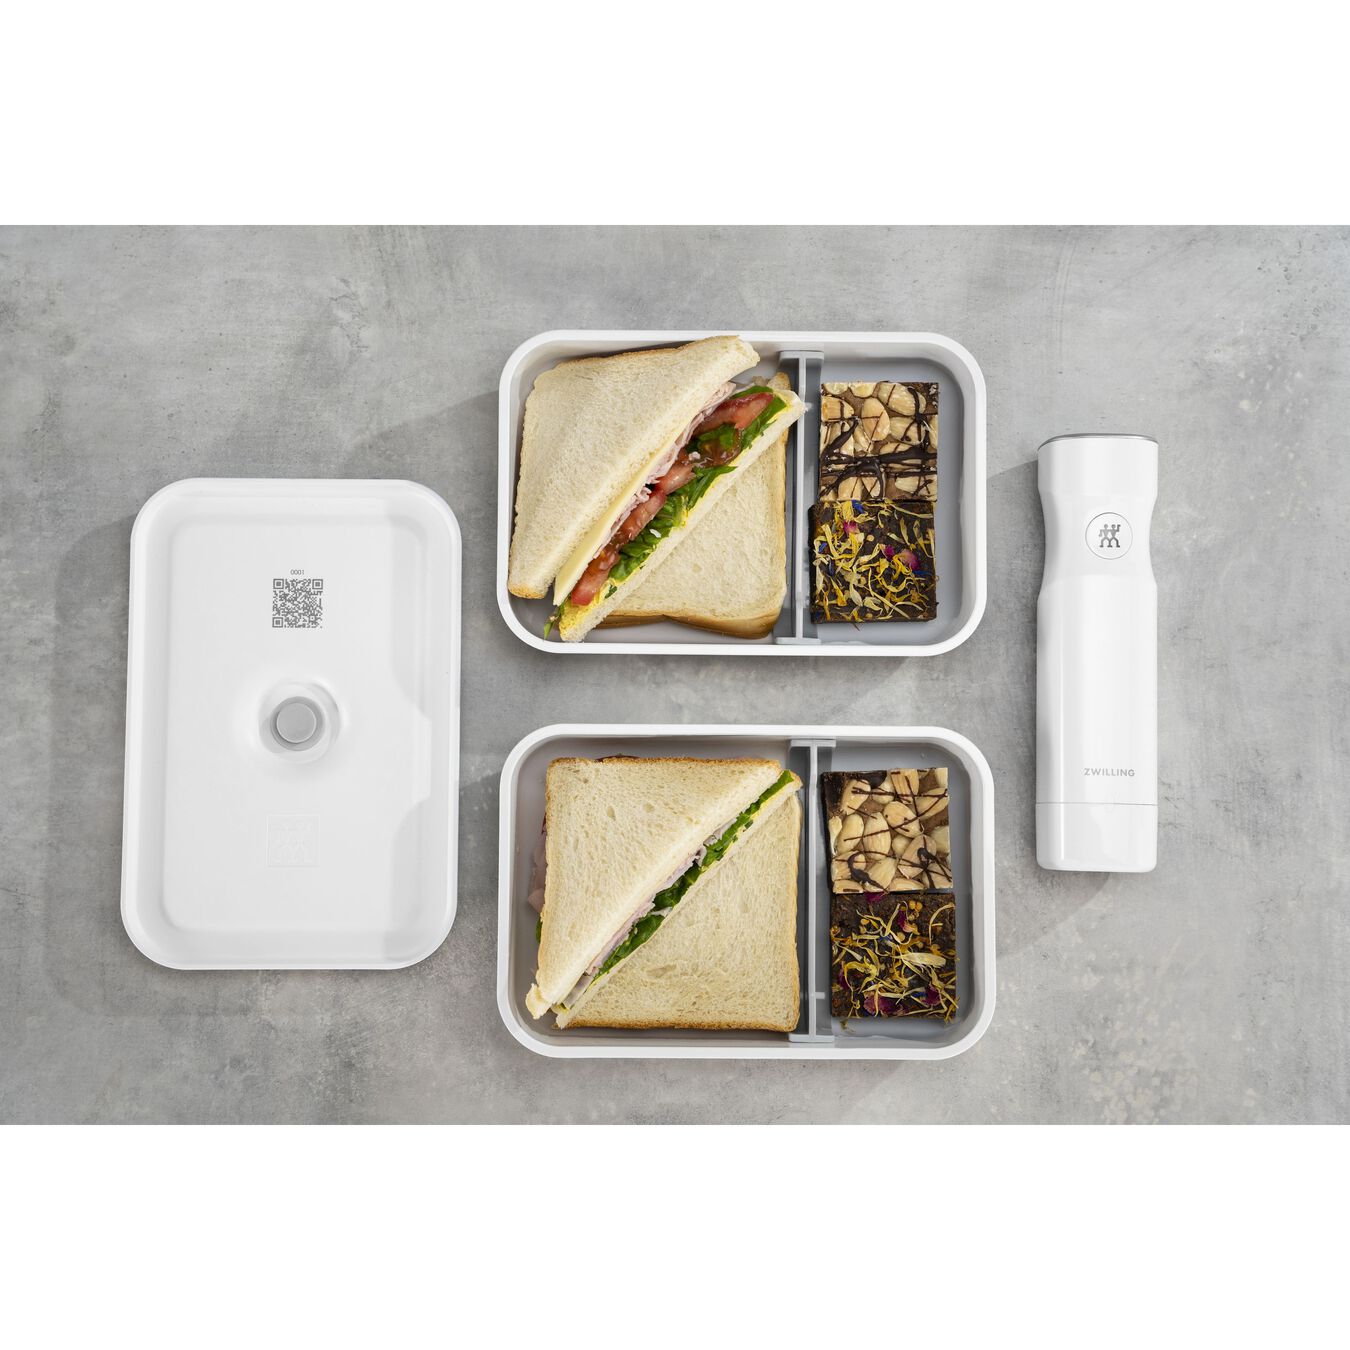 Lunch box sottovuoto L piatto, plastica, bianco-grigio,,large 10